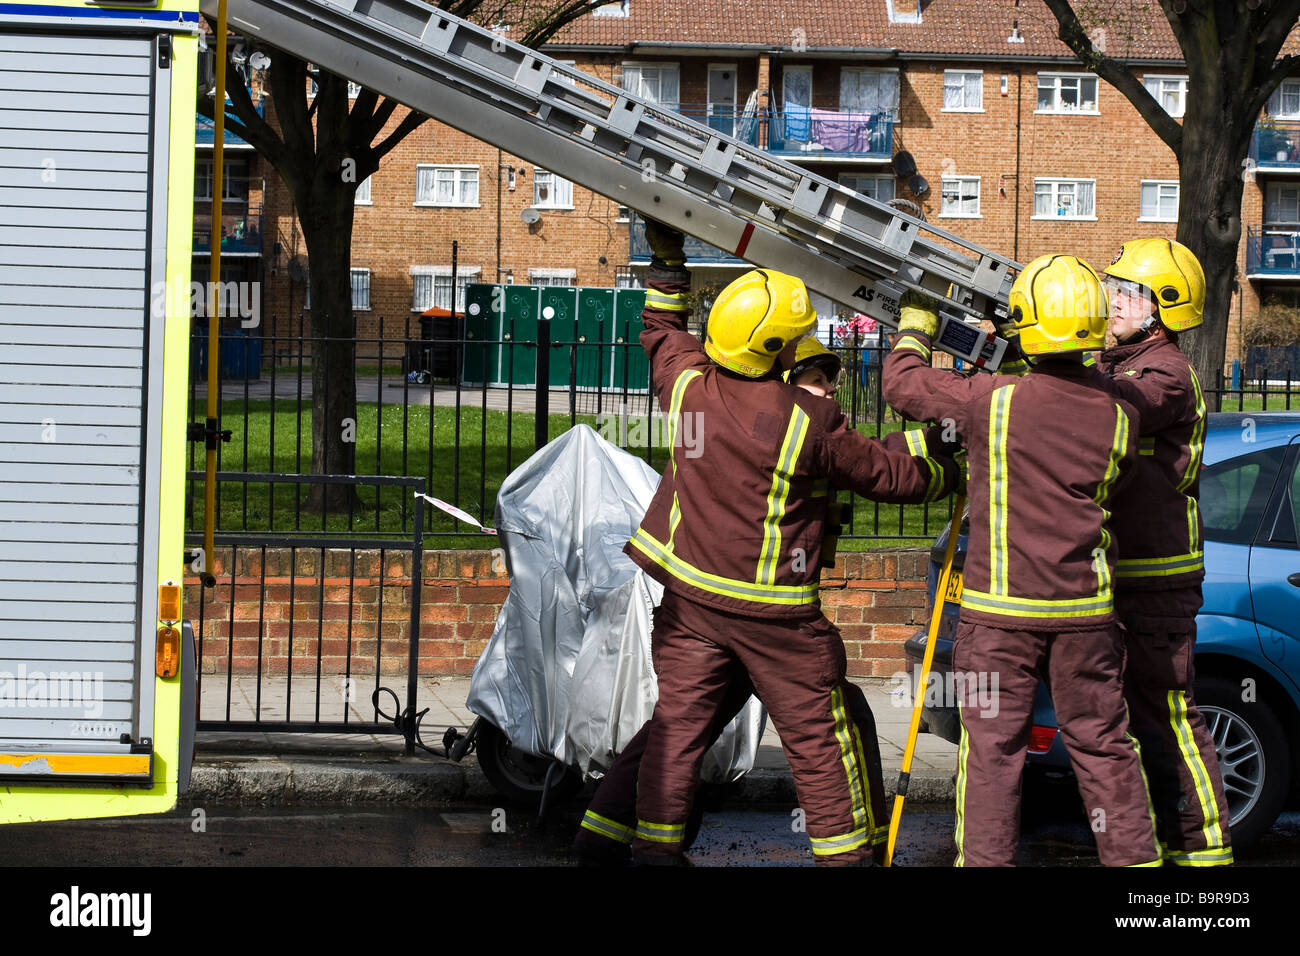 Ladder uk engine fire men fire woman Stock Photo